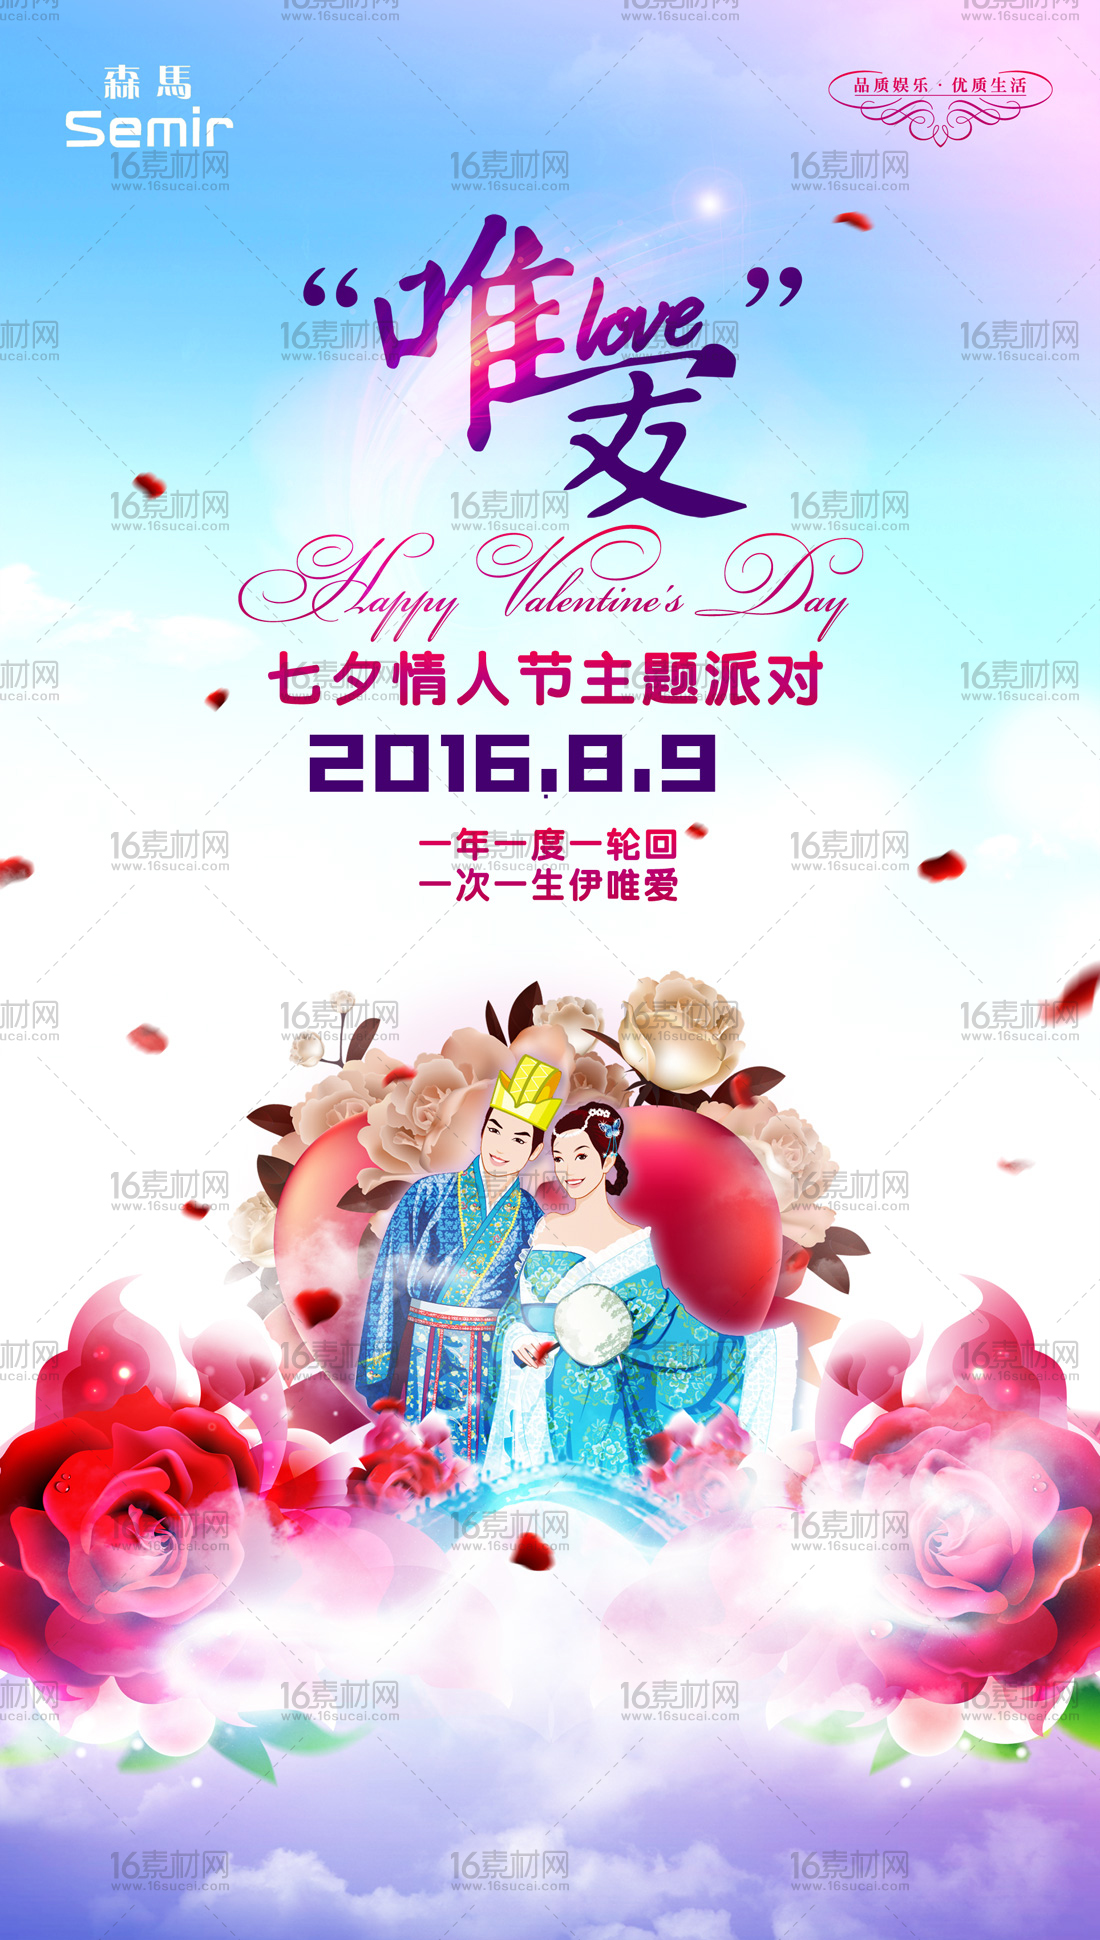 粉色浪漫七夕情人节主题派对宣传海报psd分层素材